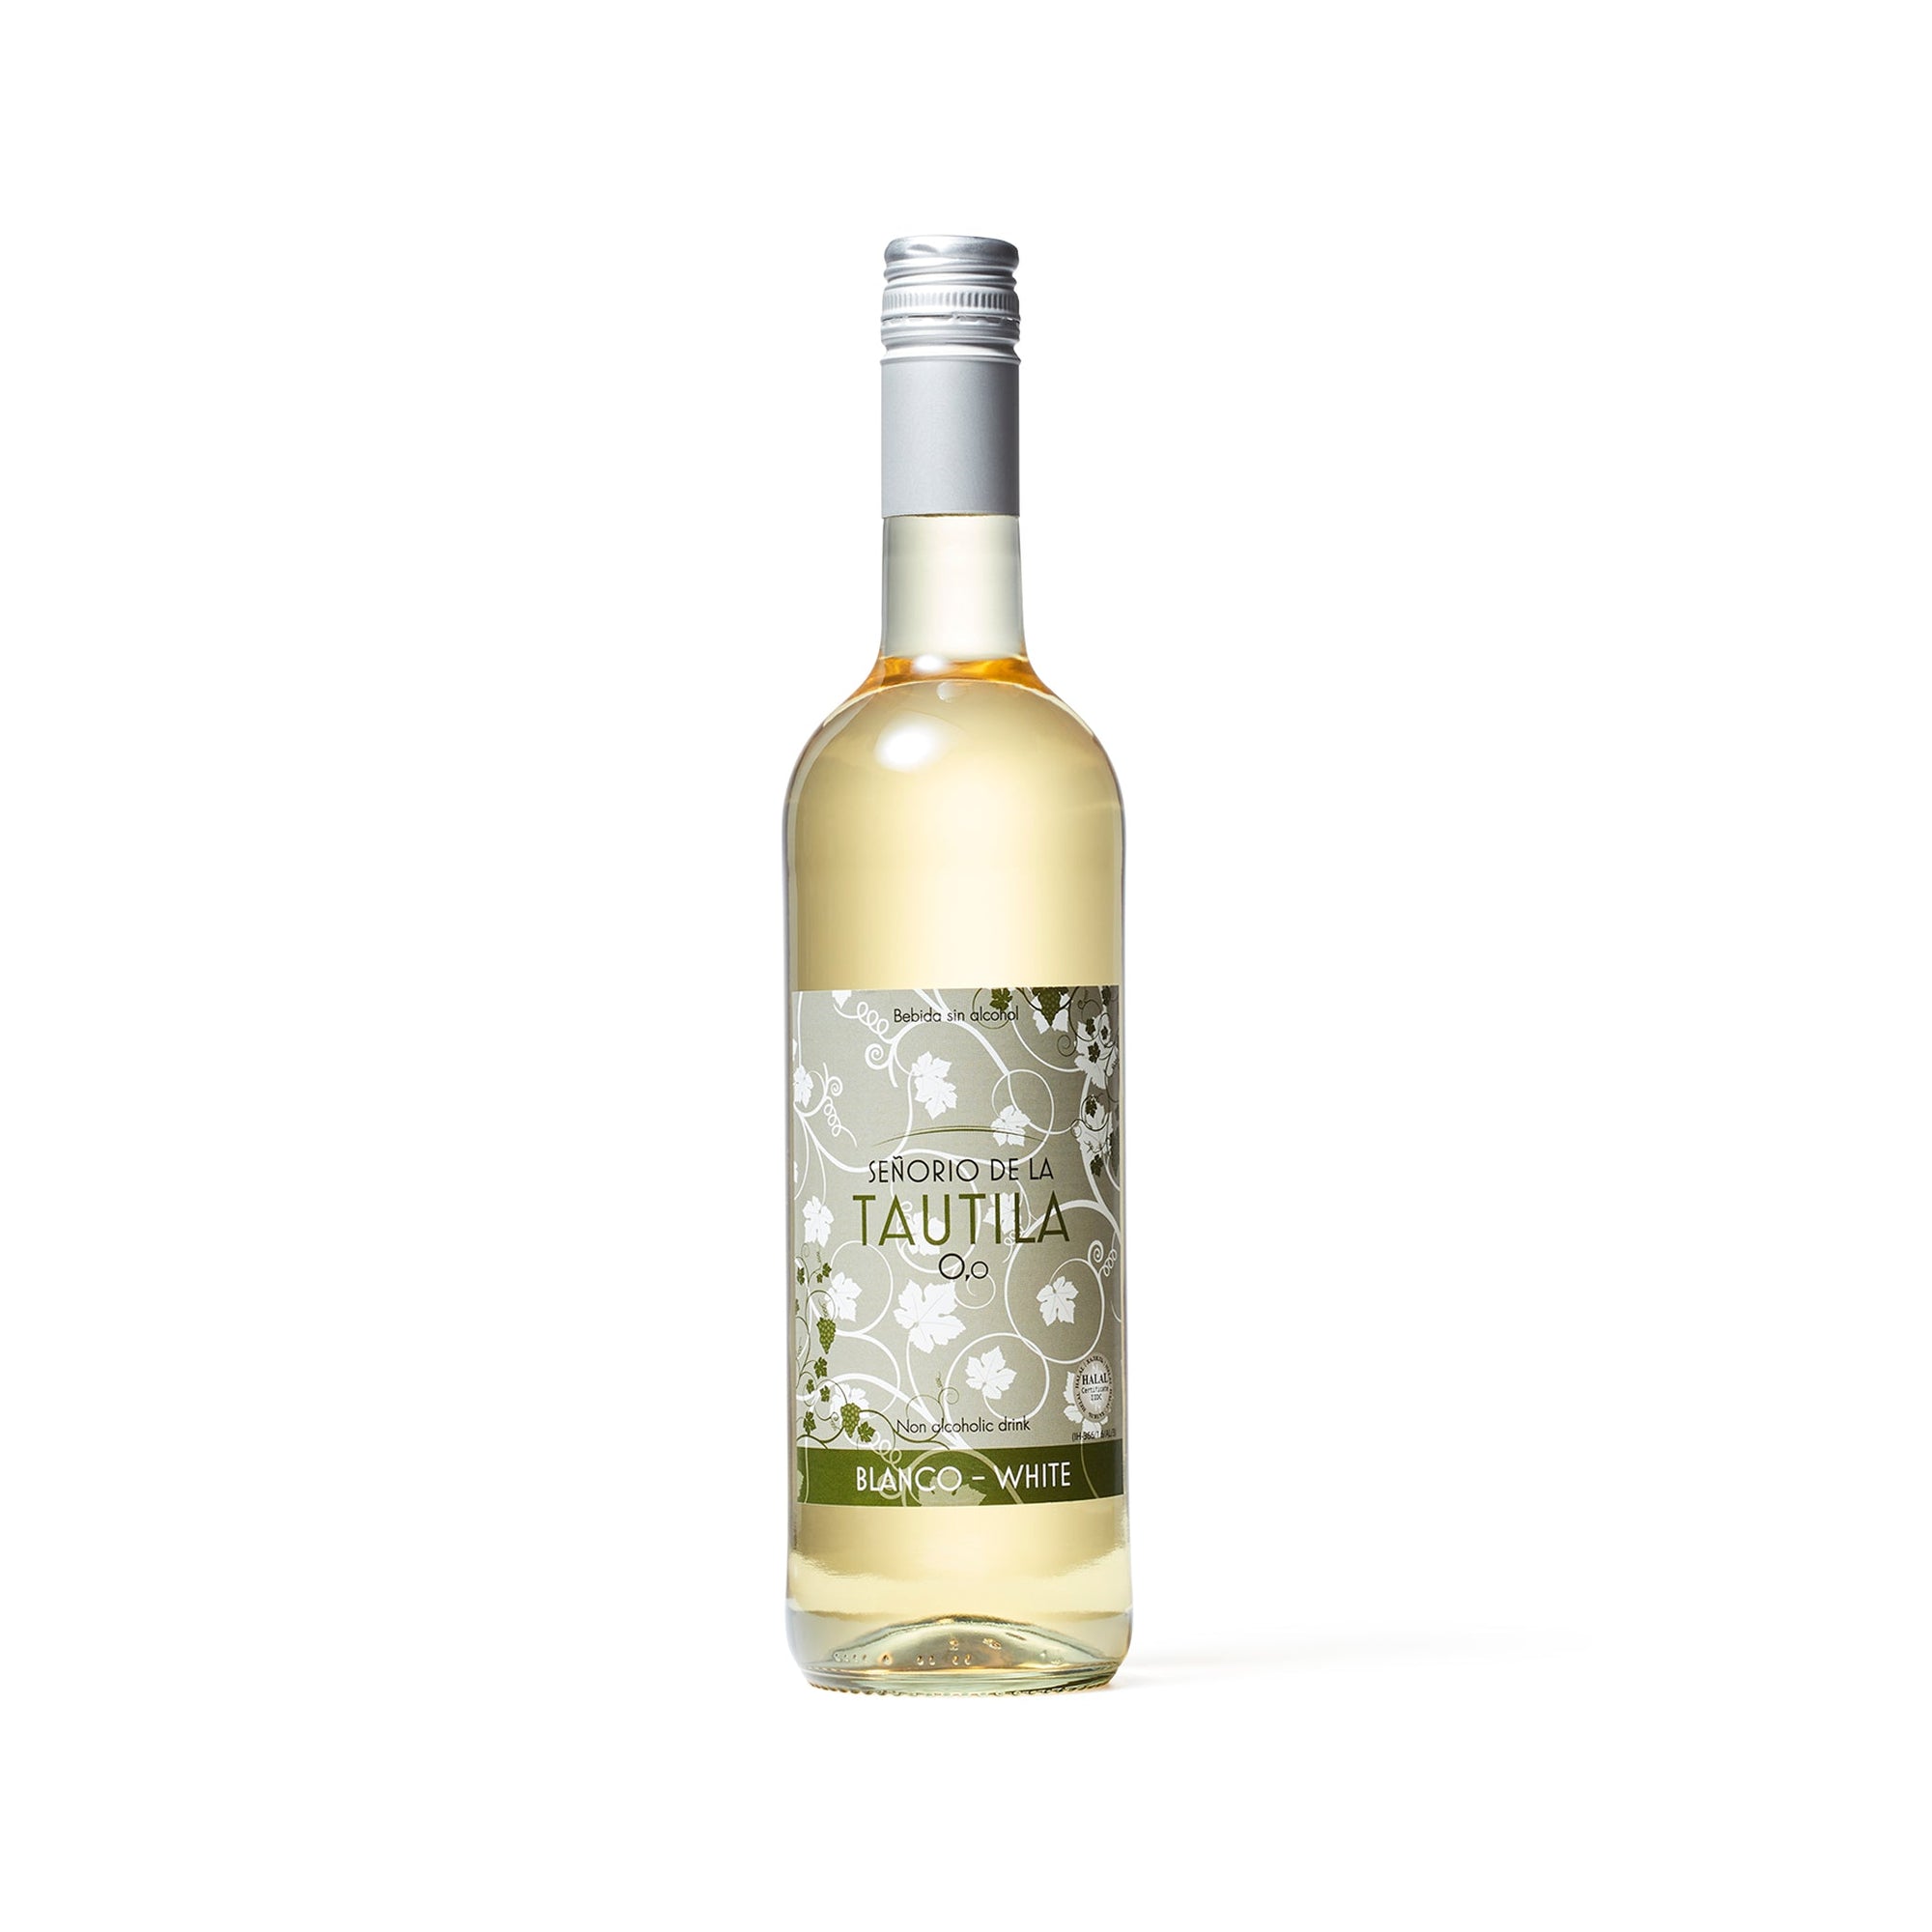 Señorio de la Tautila - Blanco White Non-Alcoholic Wine - Boisson